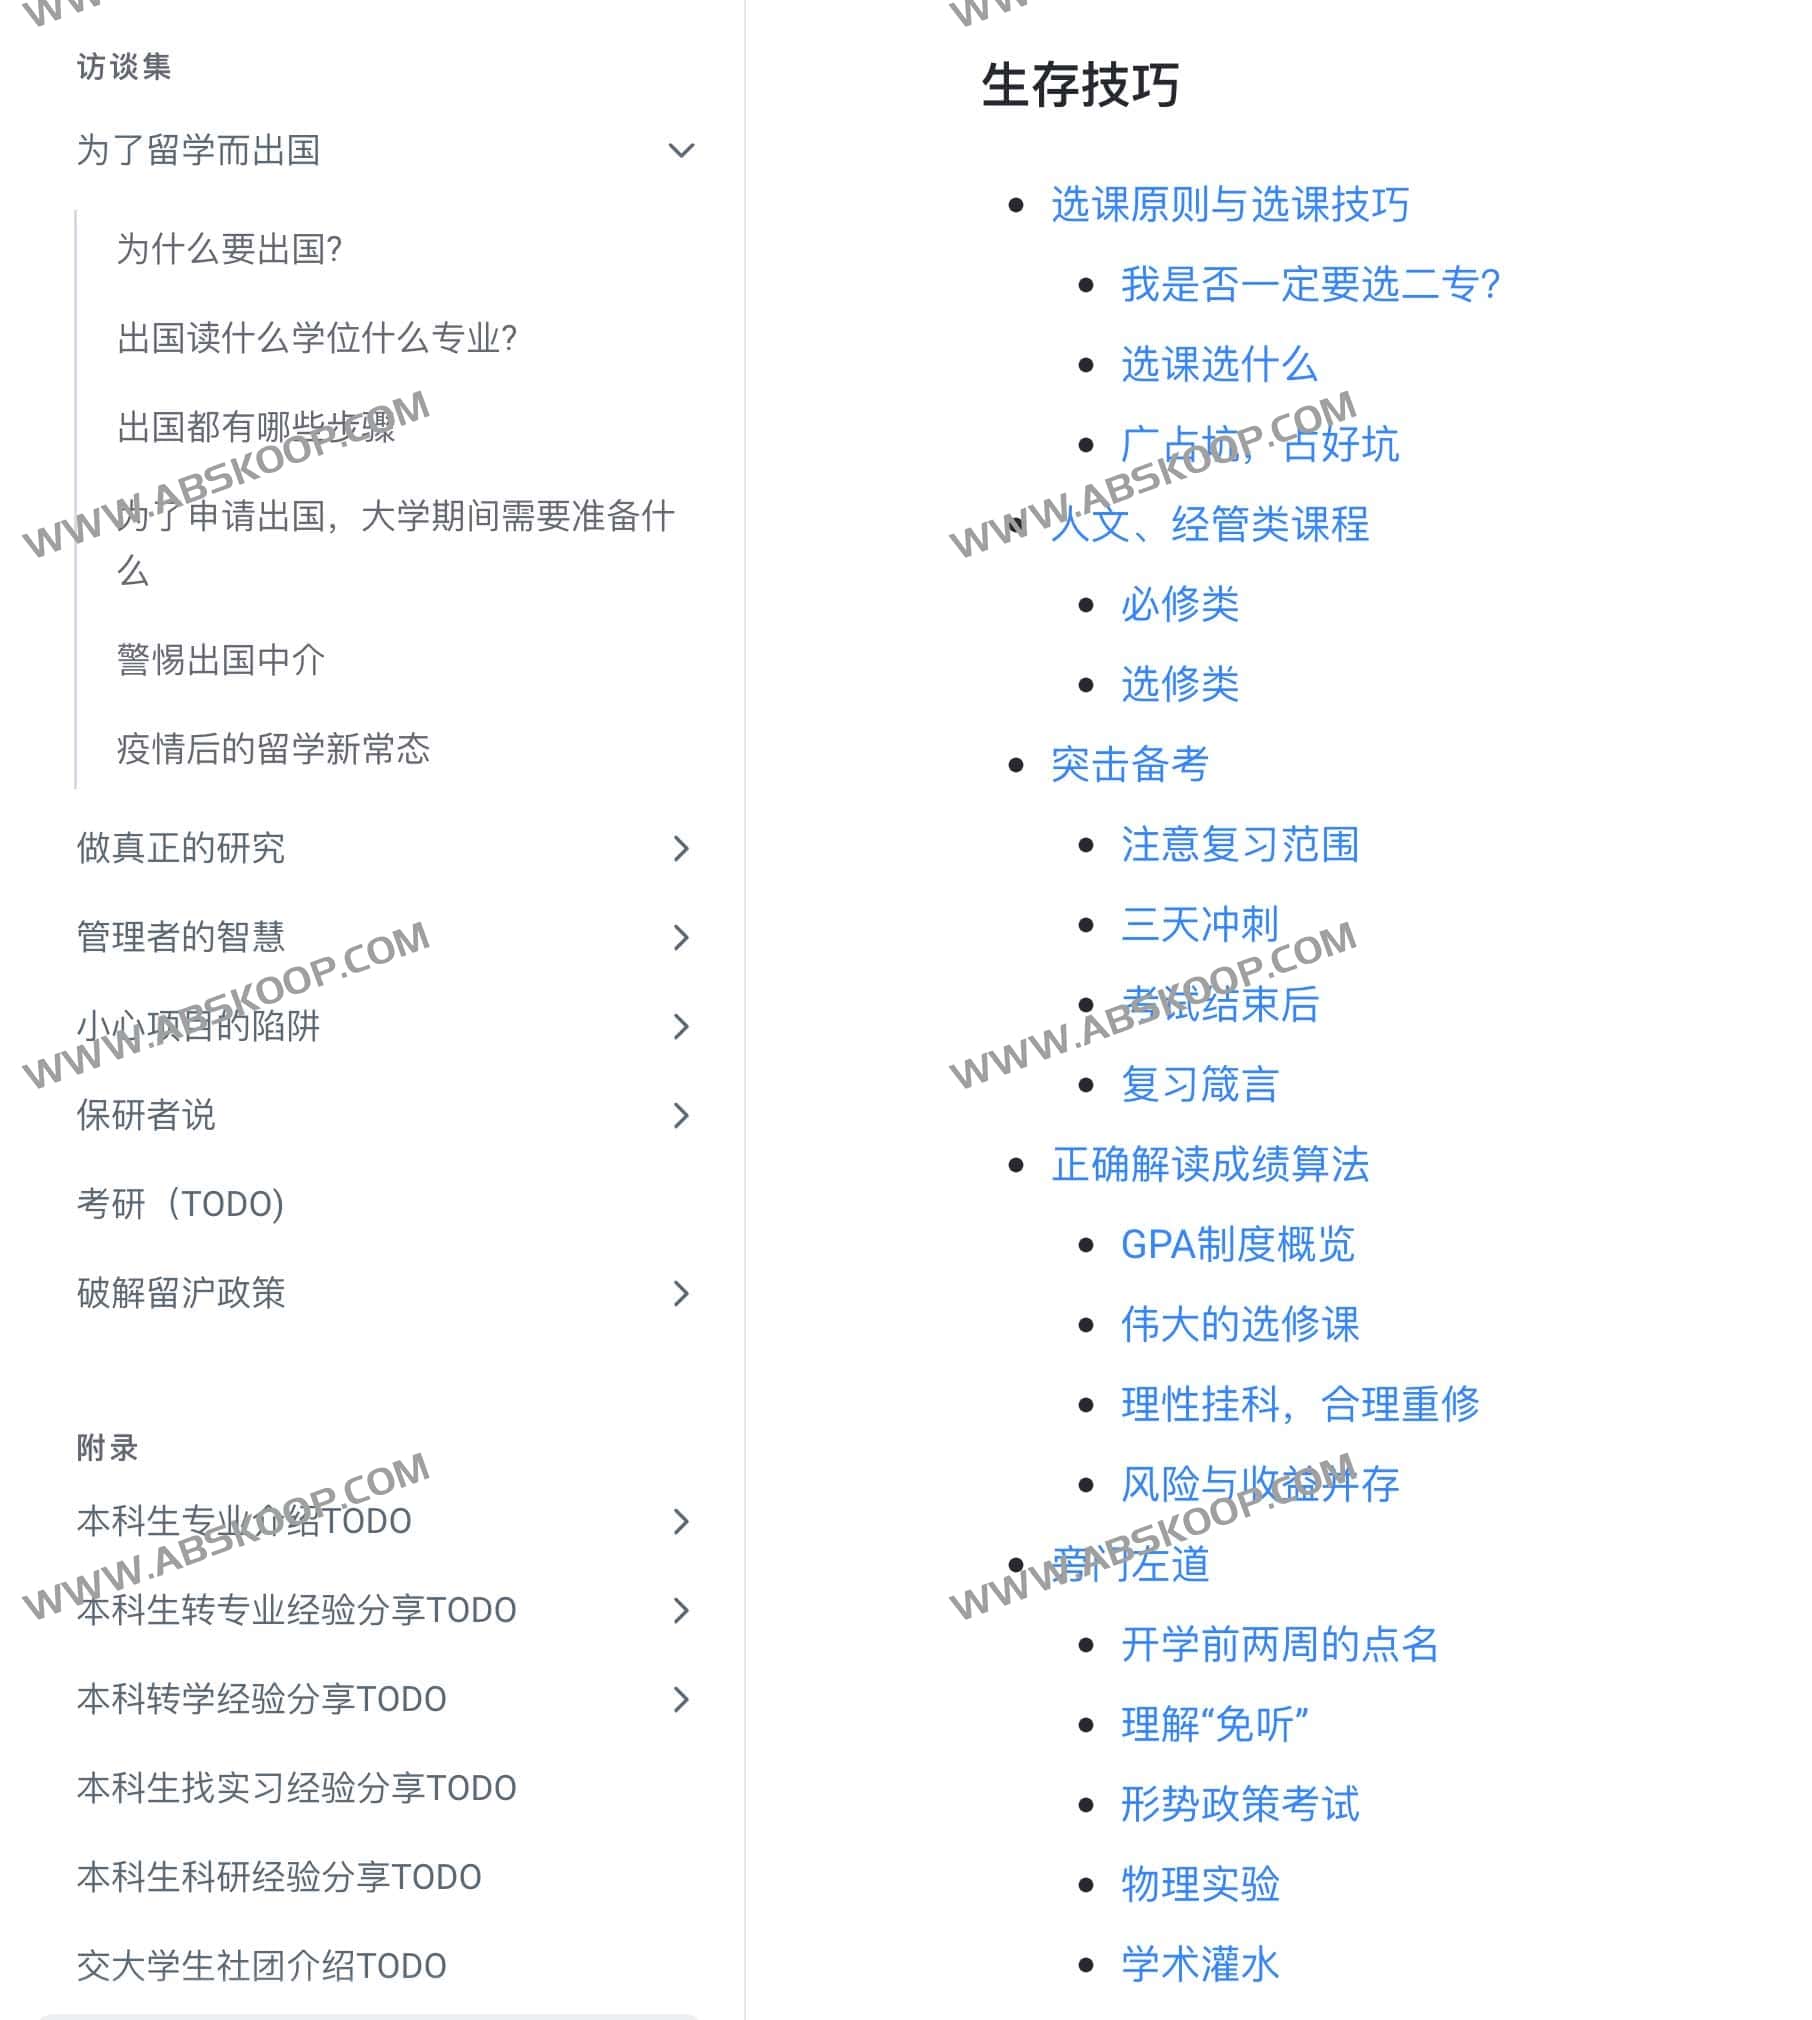 上海交通大学生存手册-出国,留学,考研等指南